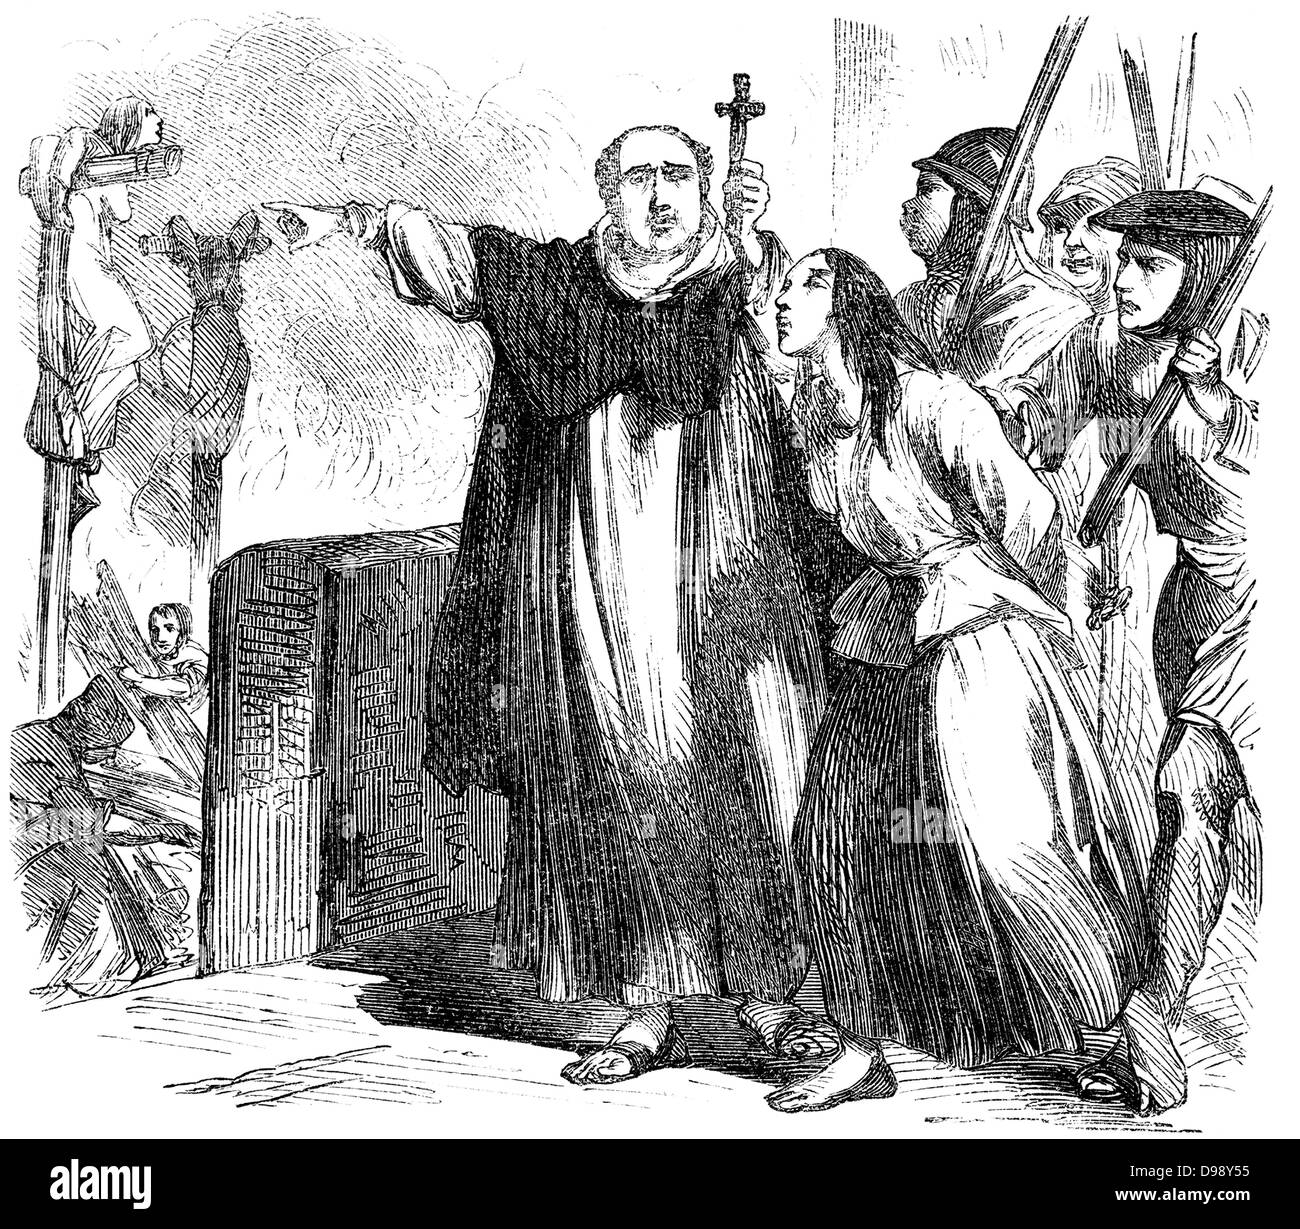 Brûler des sorcières à l'époque médiévale, les gens photo du xixe siècle, 1864, Germany, Europe Banque D'Images